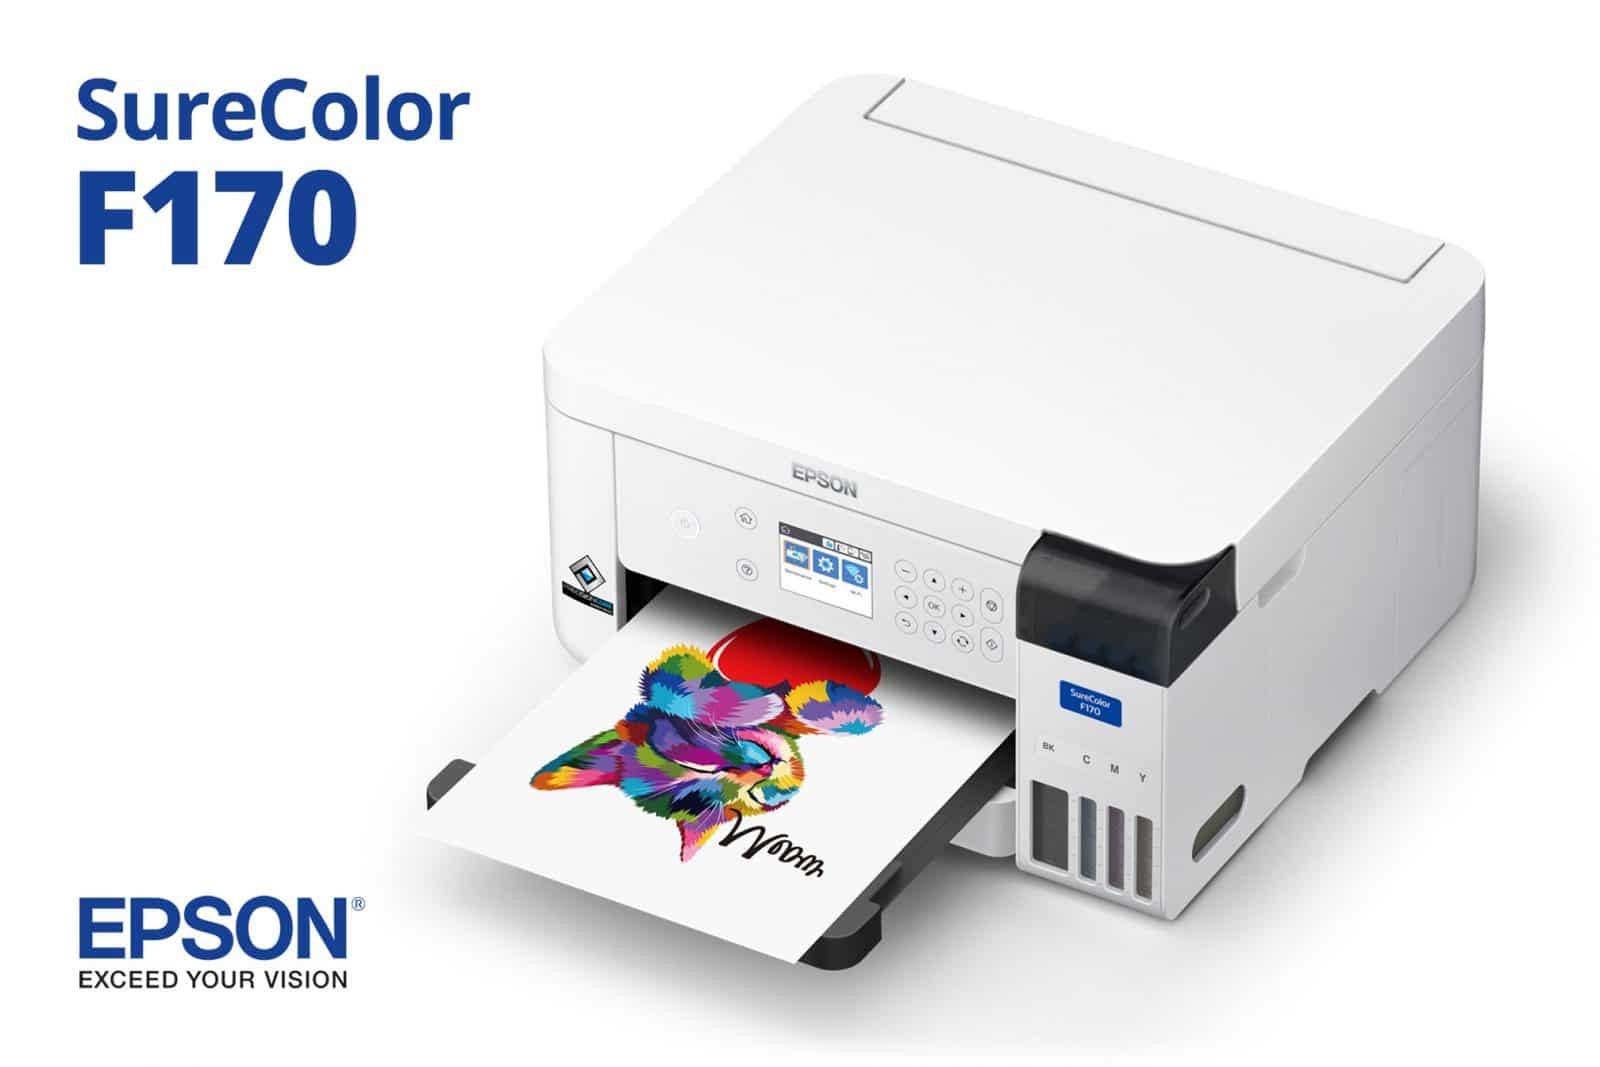 impresoras y scanners -  Impresora Epson SureColor F170  2